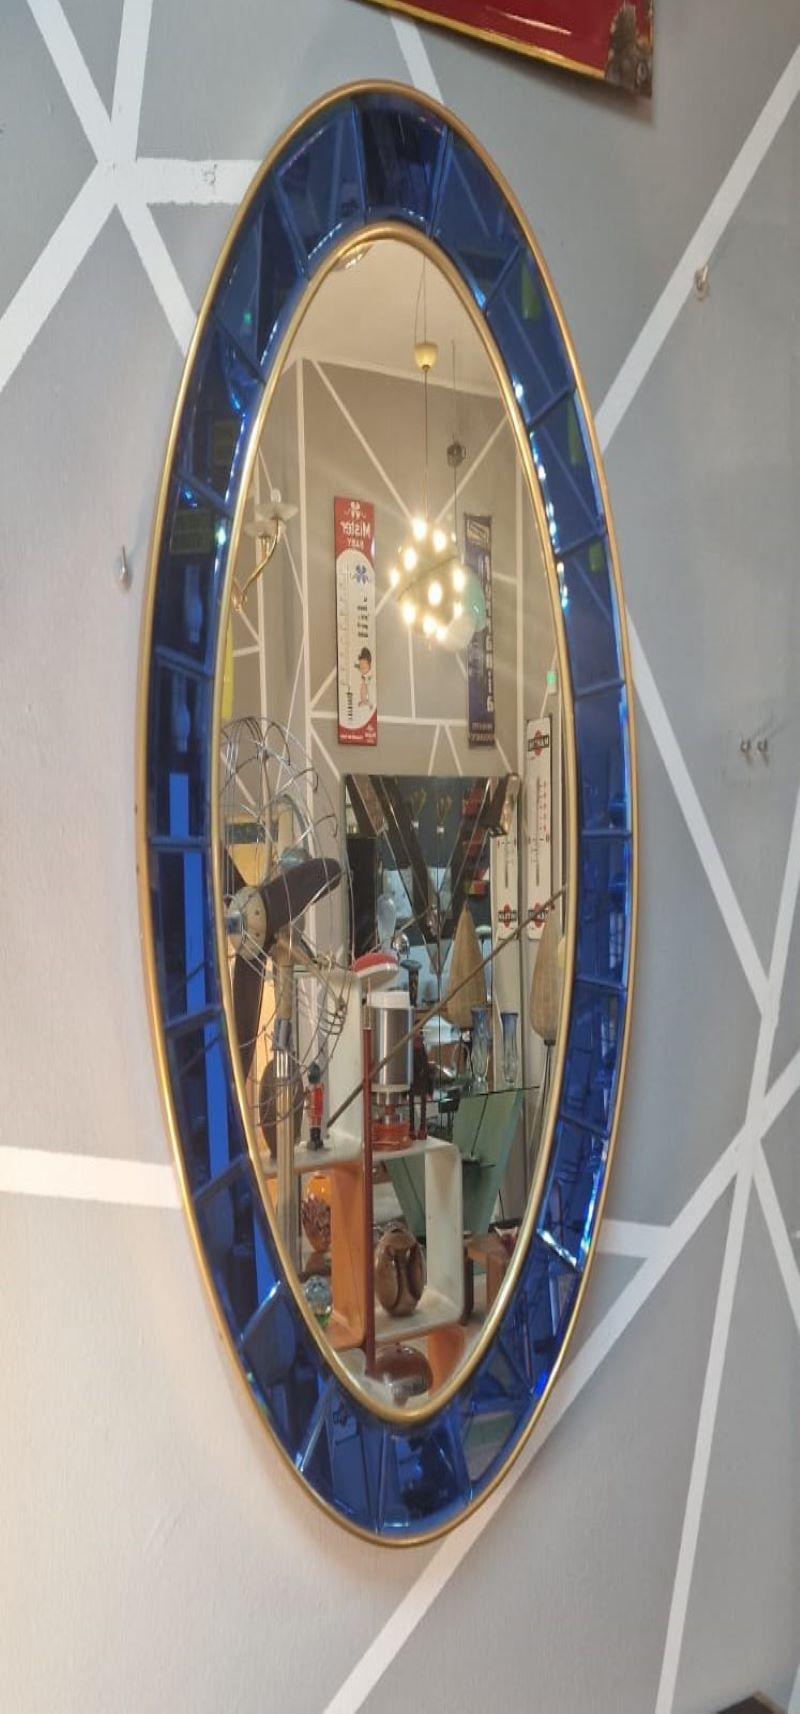 Specchio Cristal Art ovale anni '60 In Good Condition For Sale In Palermo, IT